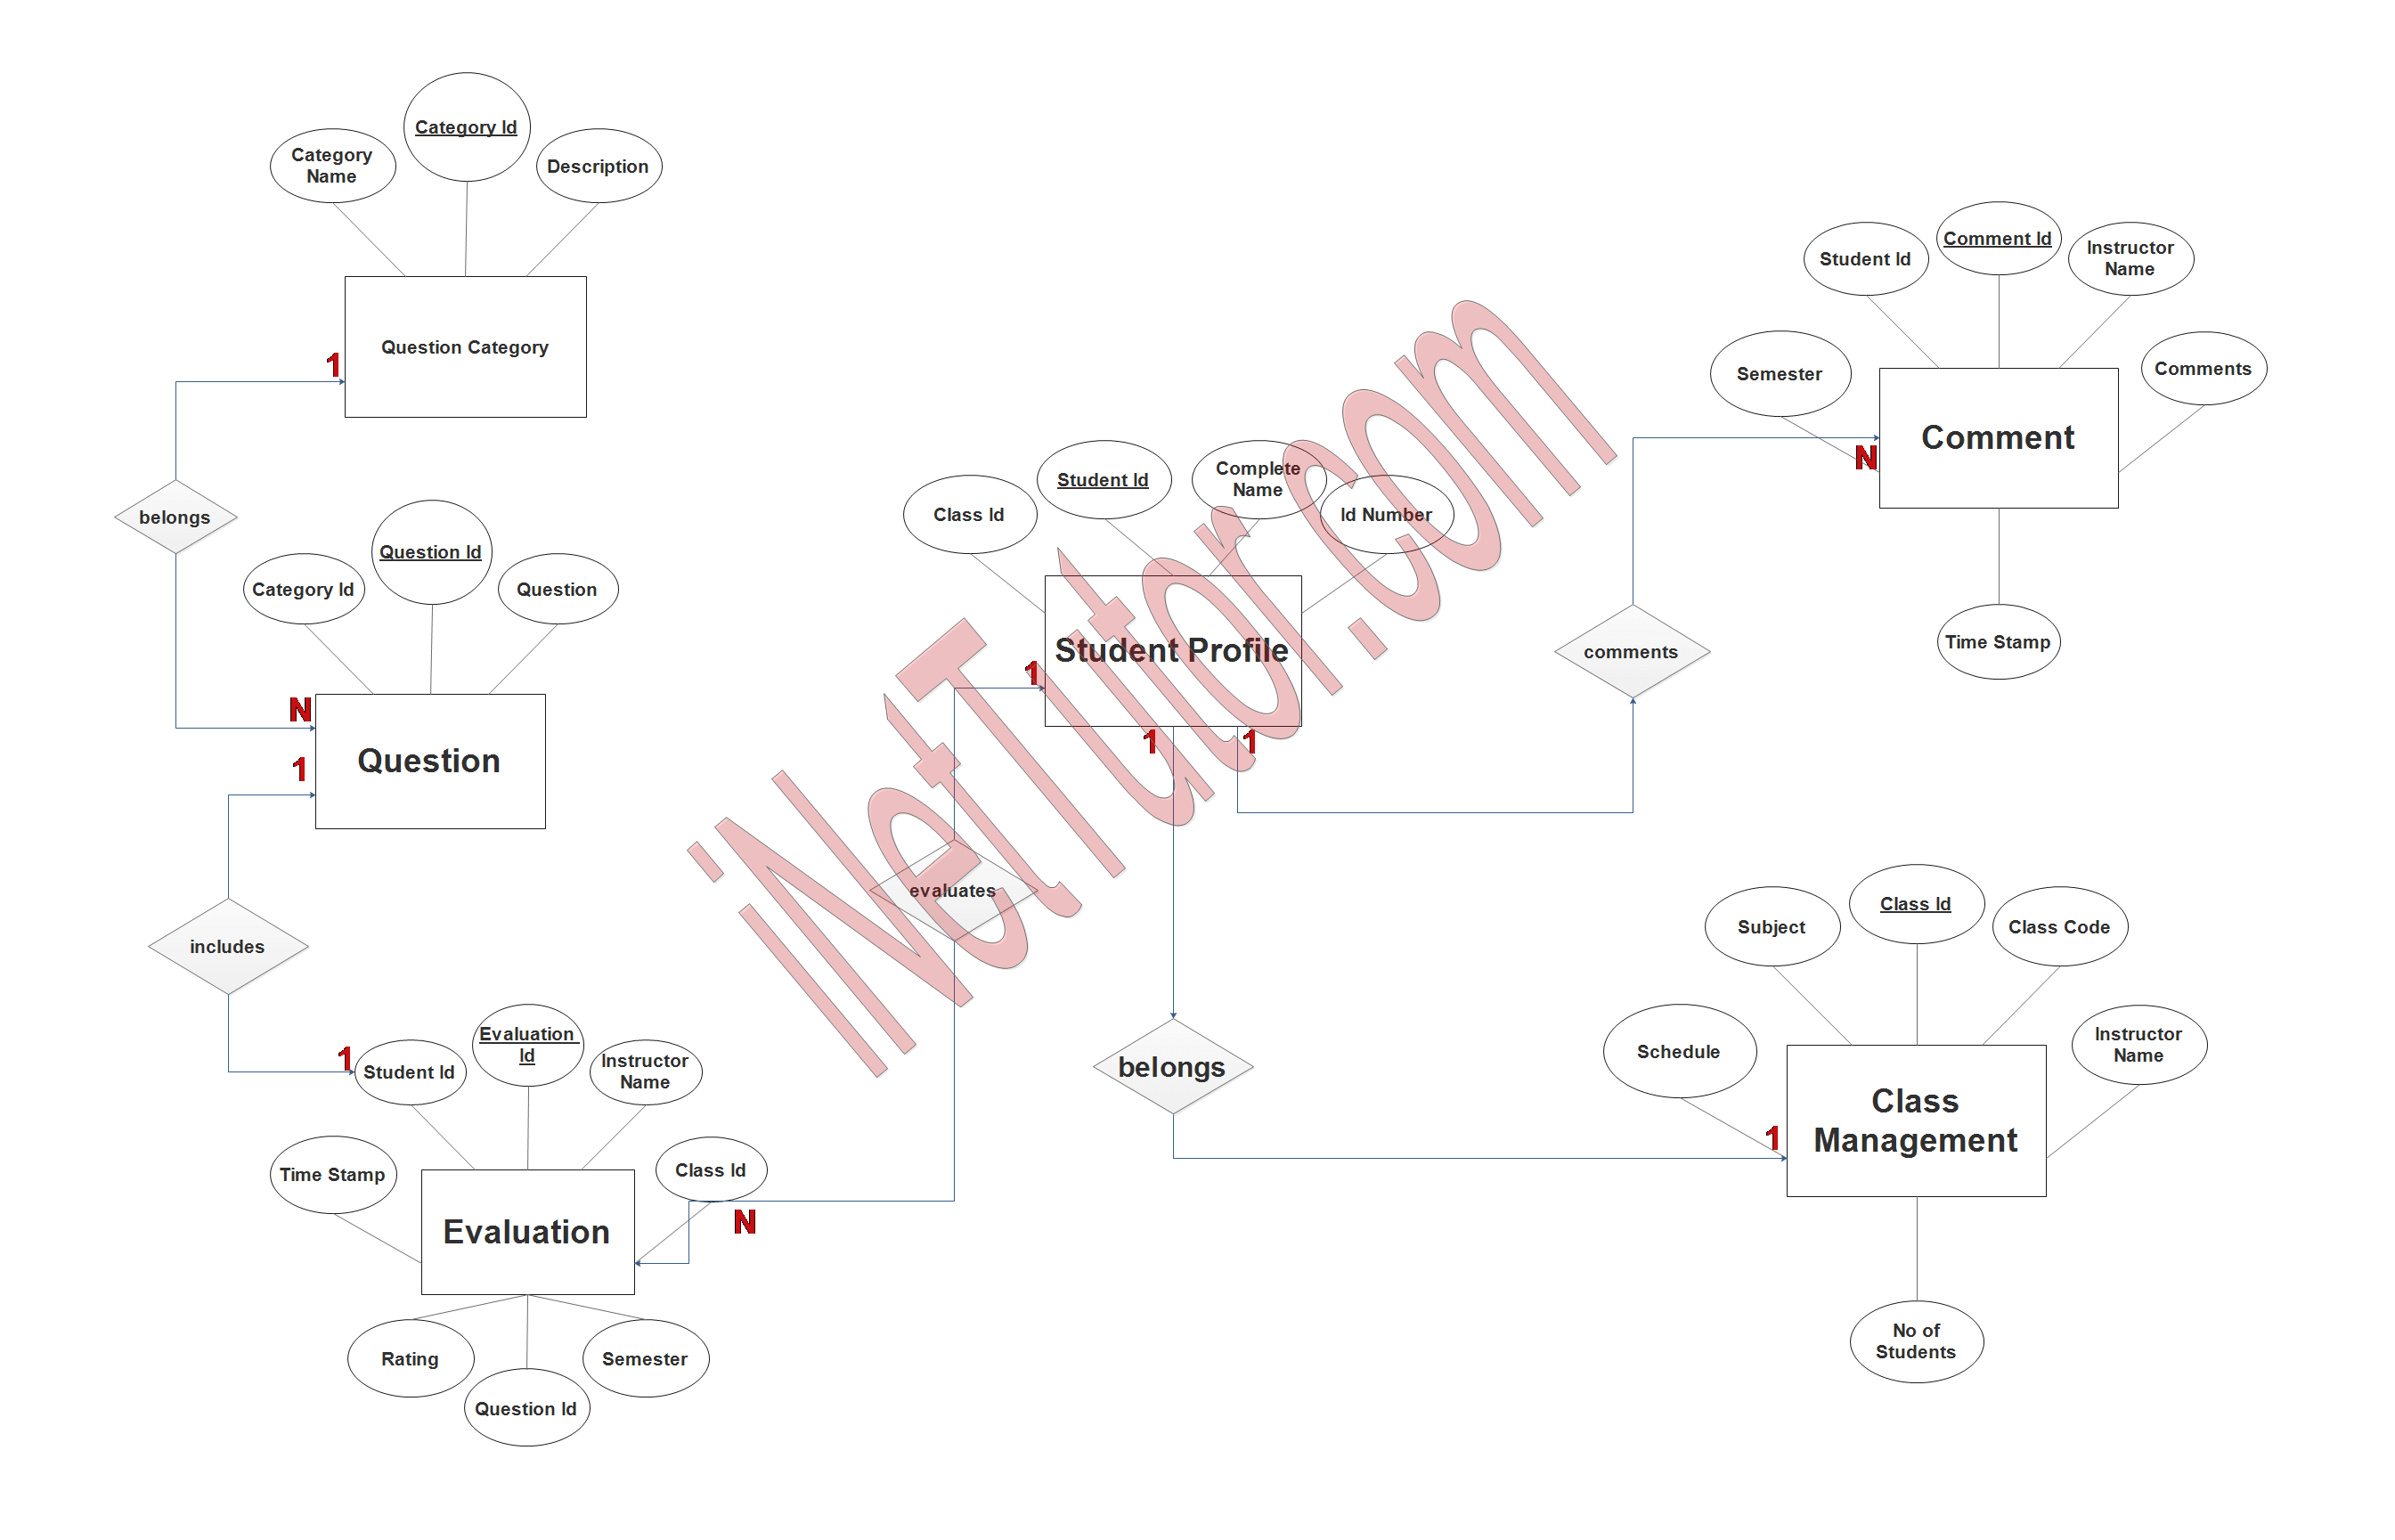 Faculty Evaluation System ER Diagram - Step 3 Complete ERD